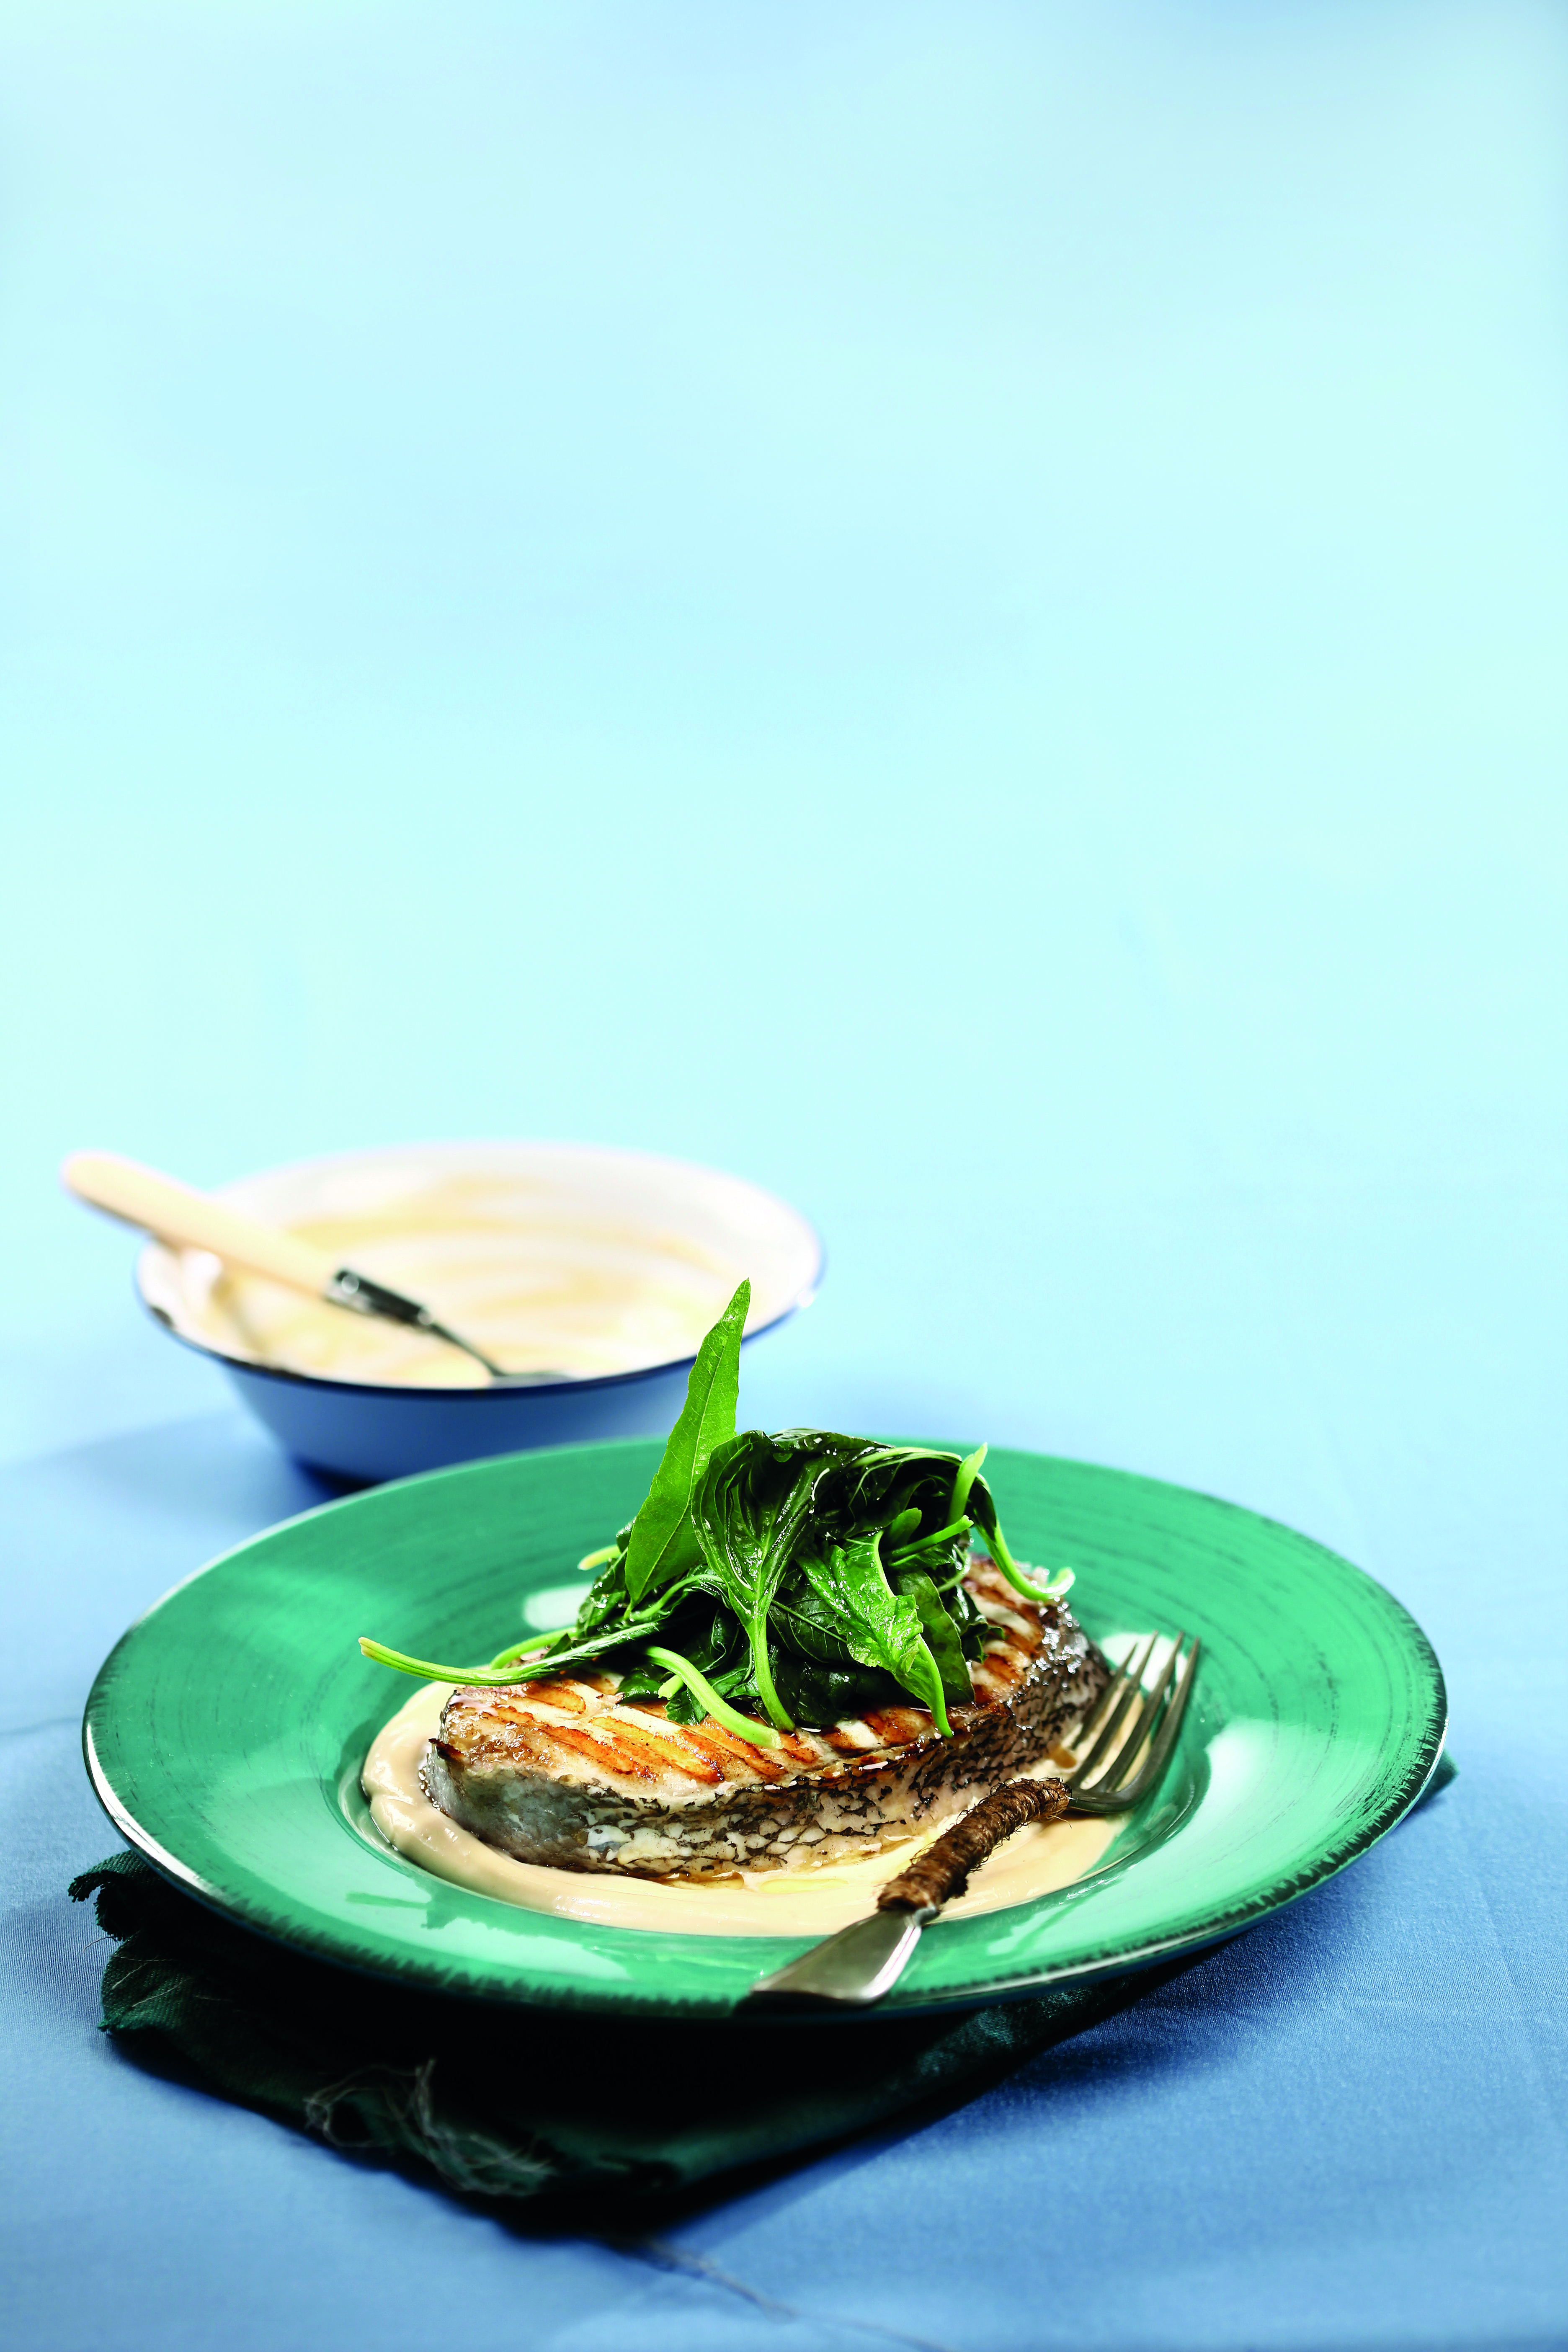 Σαλάτα με ψητό ψάρι και σάλτσα ταραμά